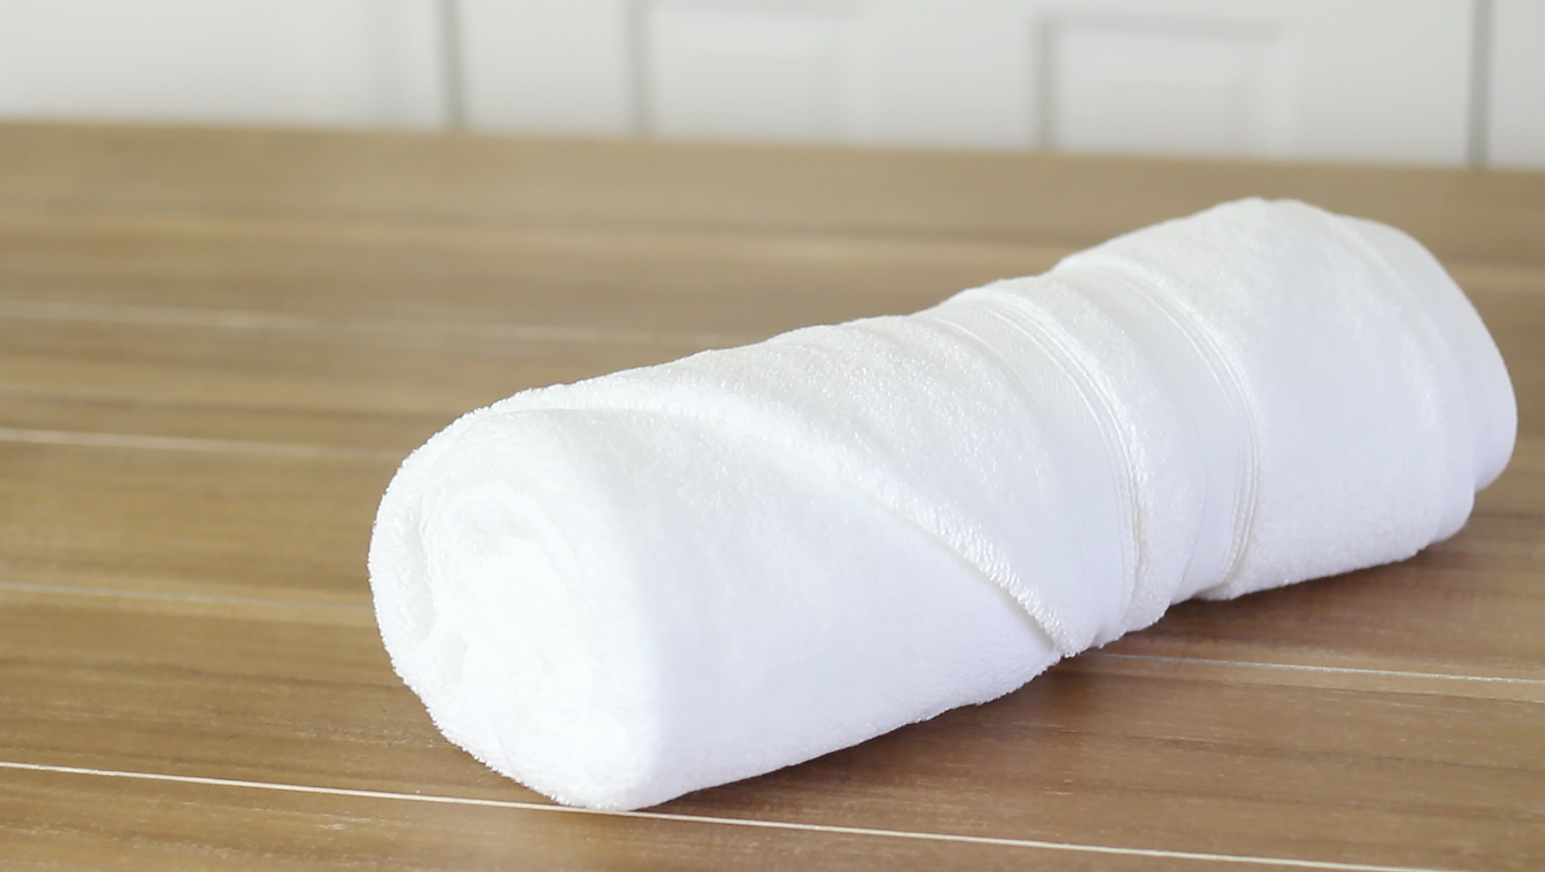 Метод полотенца. Скрученное полотенце. Складывание полотенец в рулонах. Свернутые полотенца. Сворачивание полотенца.